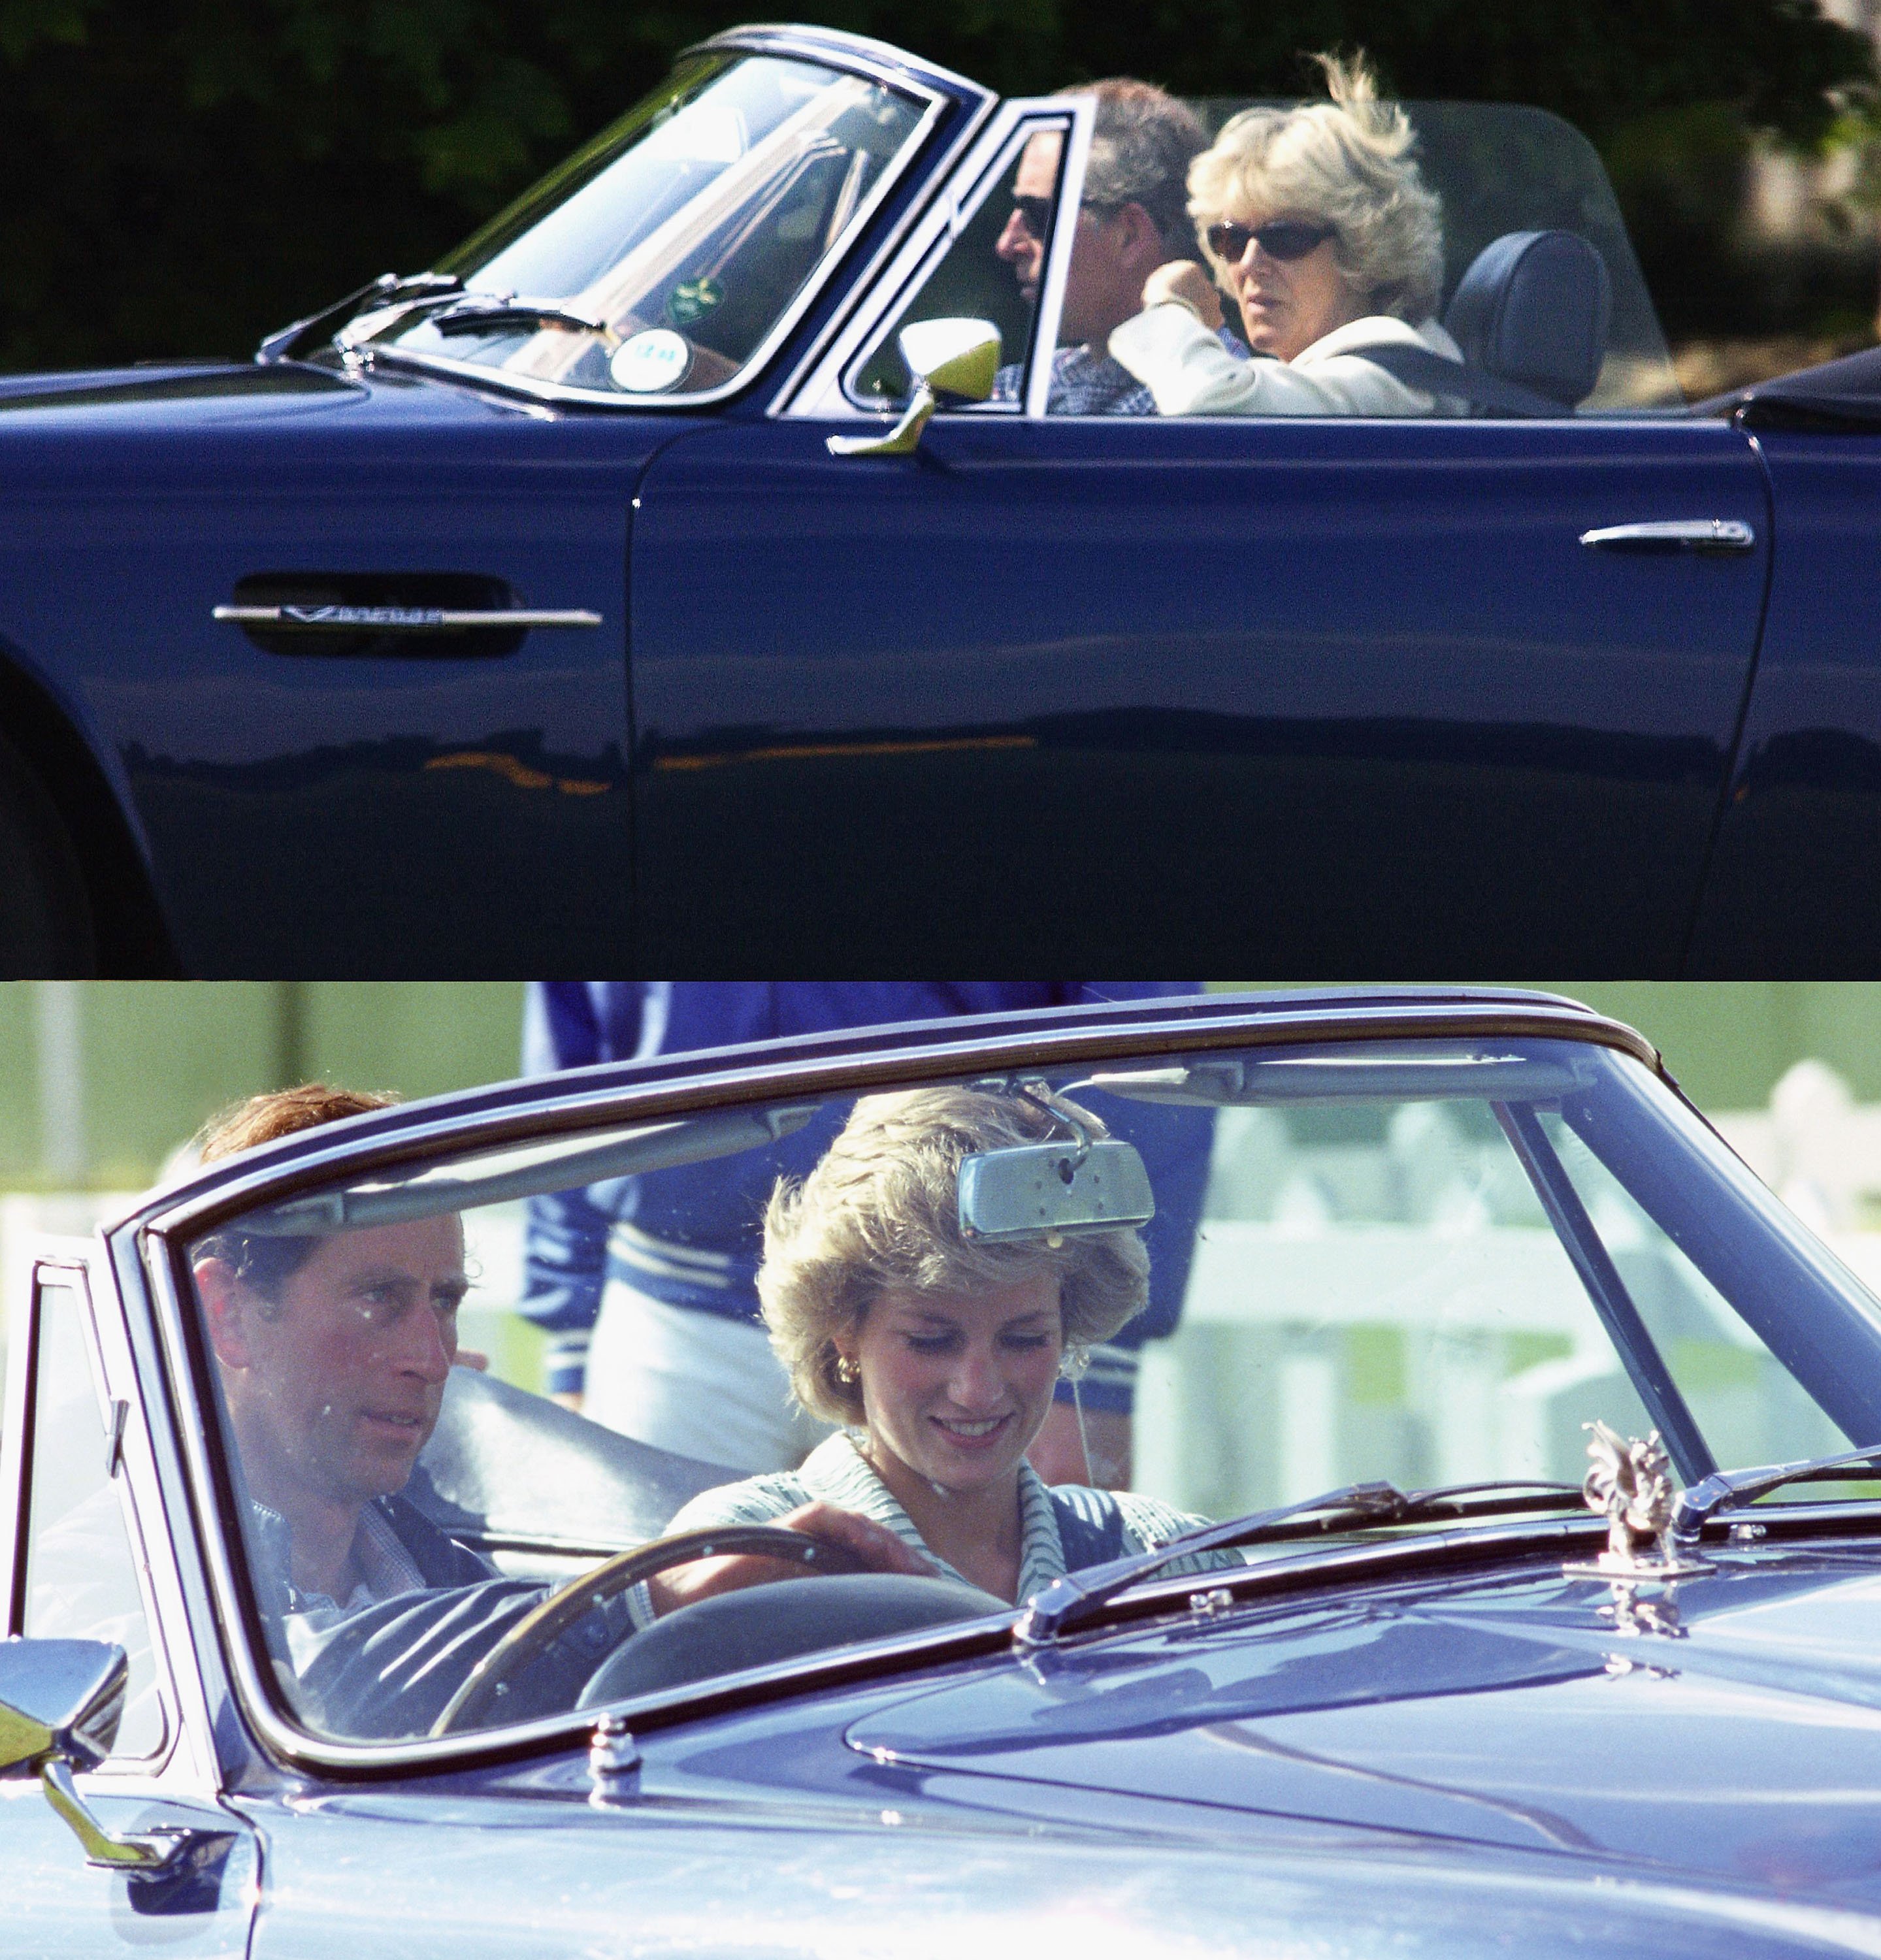 Le Prince Charles a été photographié en train de conduire Camilla Parker Bowles et la Princesse Diana dans la voiture Aston Martin | Source : Getty Images